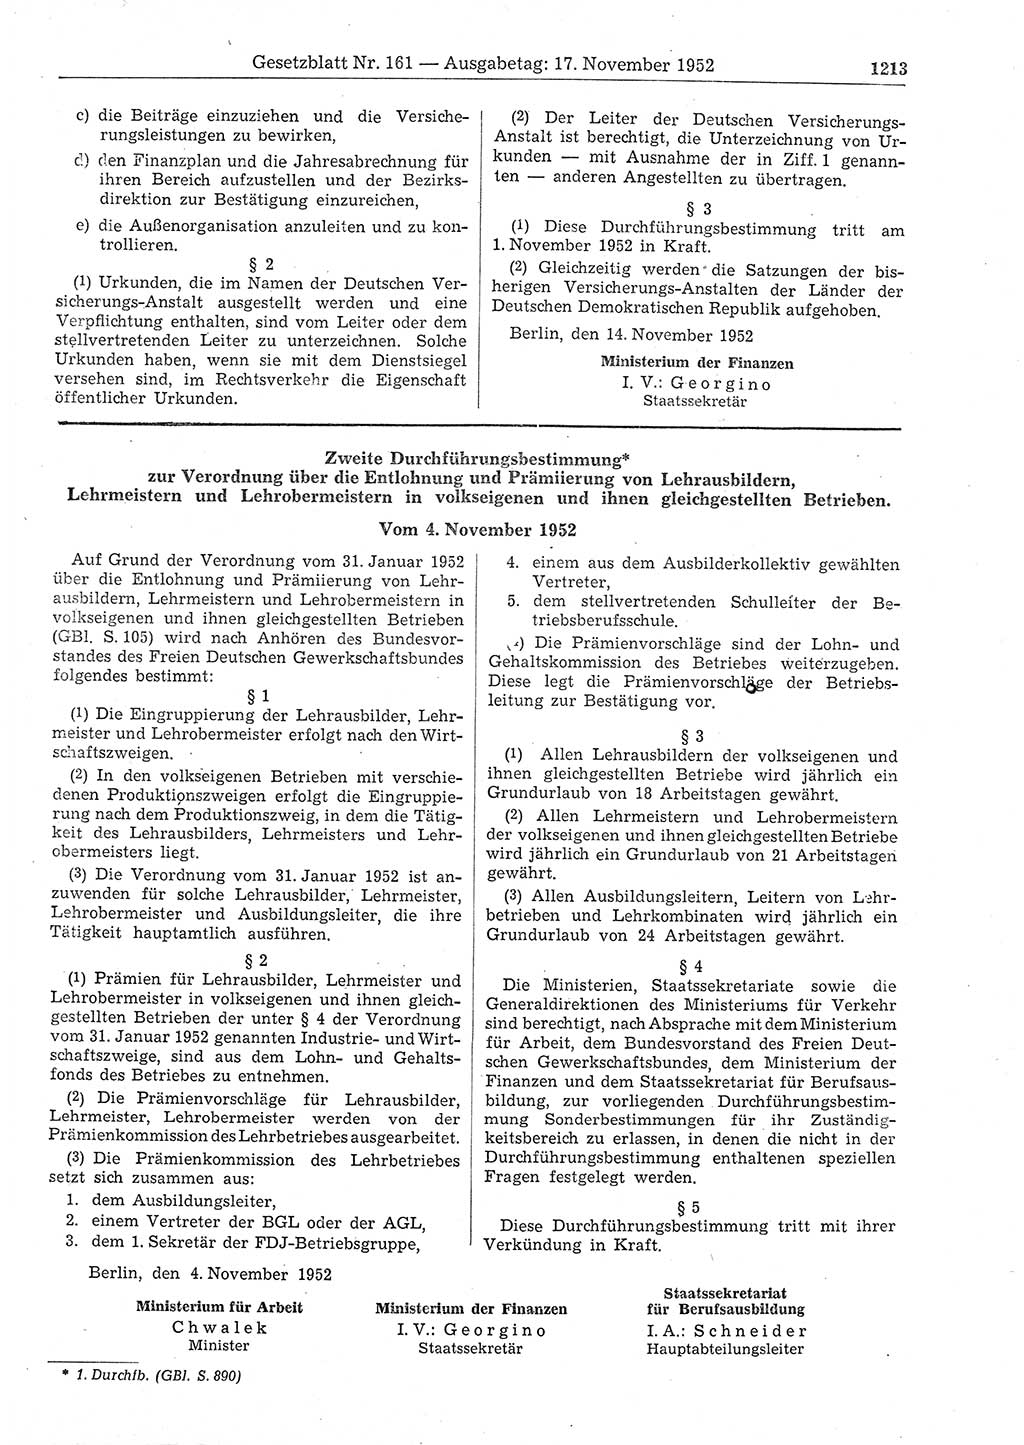 Gesetzblatt (GBl.) der Deutschen Demokratischen Republik (DDR) 1952, Seite 1213 (GBl. DDR 1952, S. 1213)